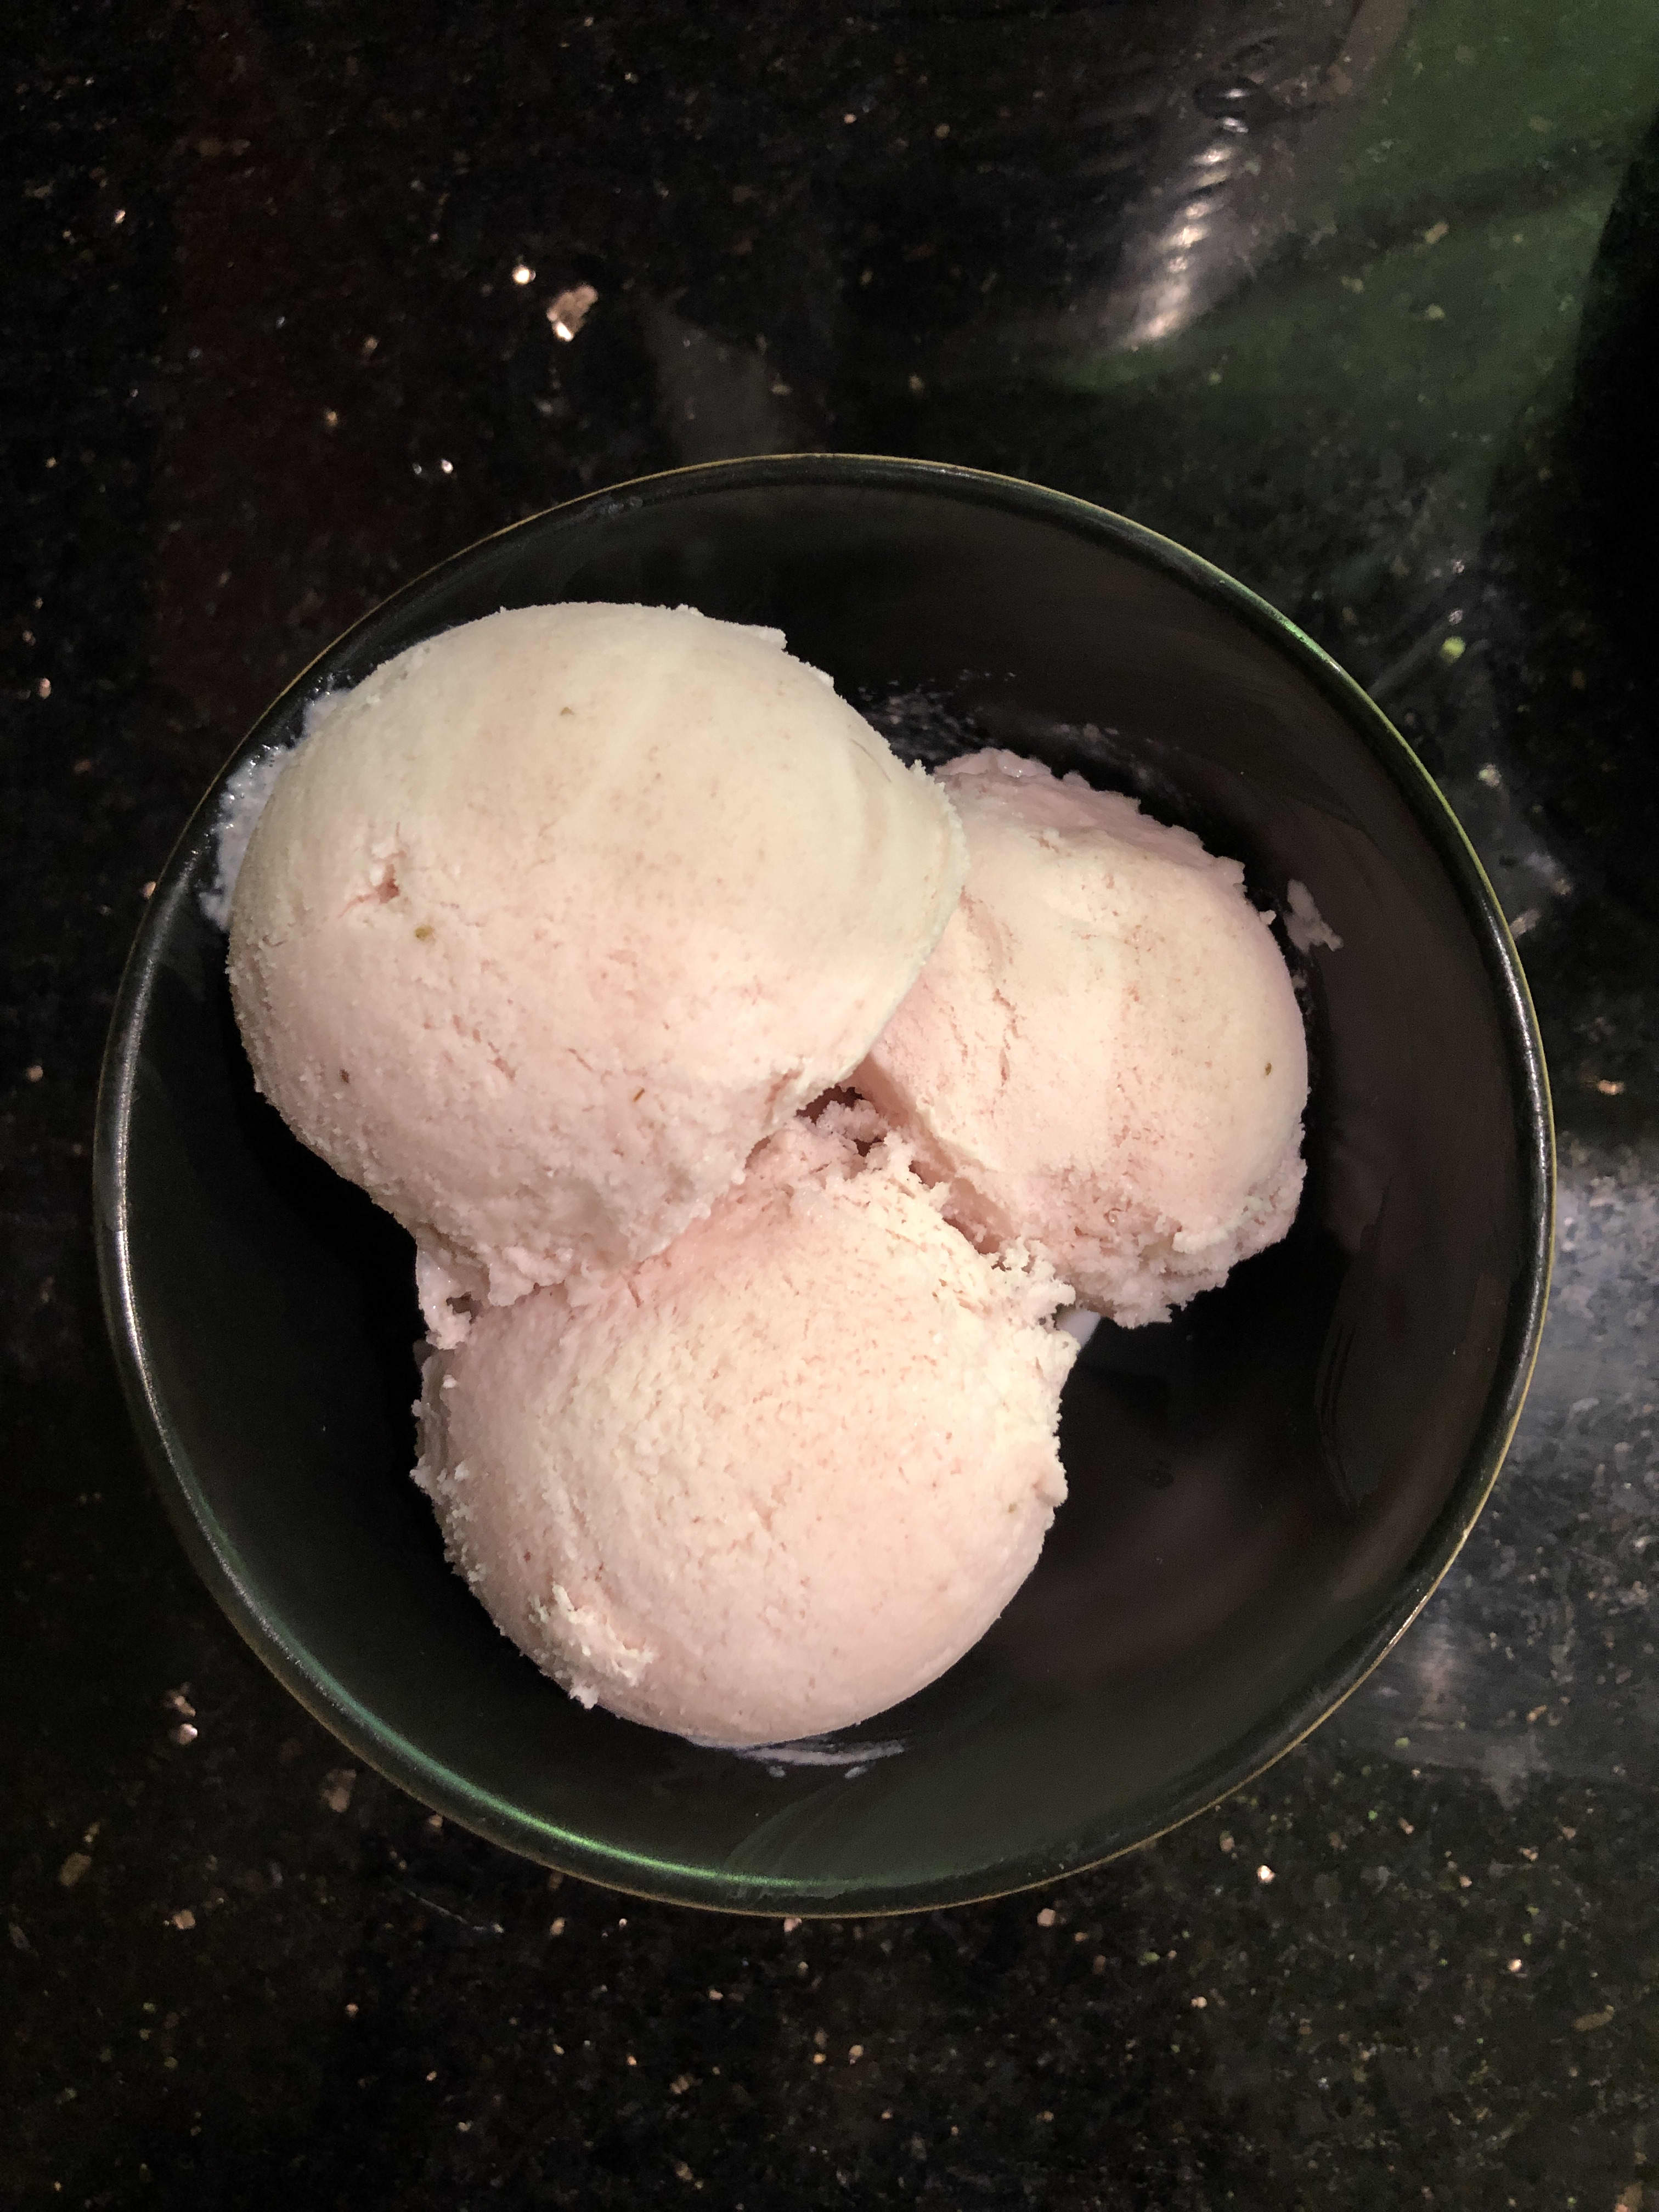 https://cdn.apartmenttherapy.info/image/upload/v1593438606/k/Edit/06-2020-instant-pot-blender-ice-cream-review/IMG_8681.jpg